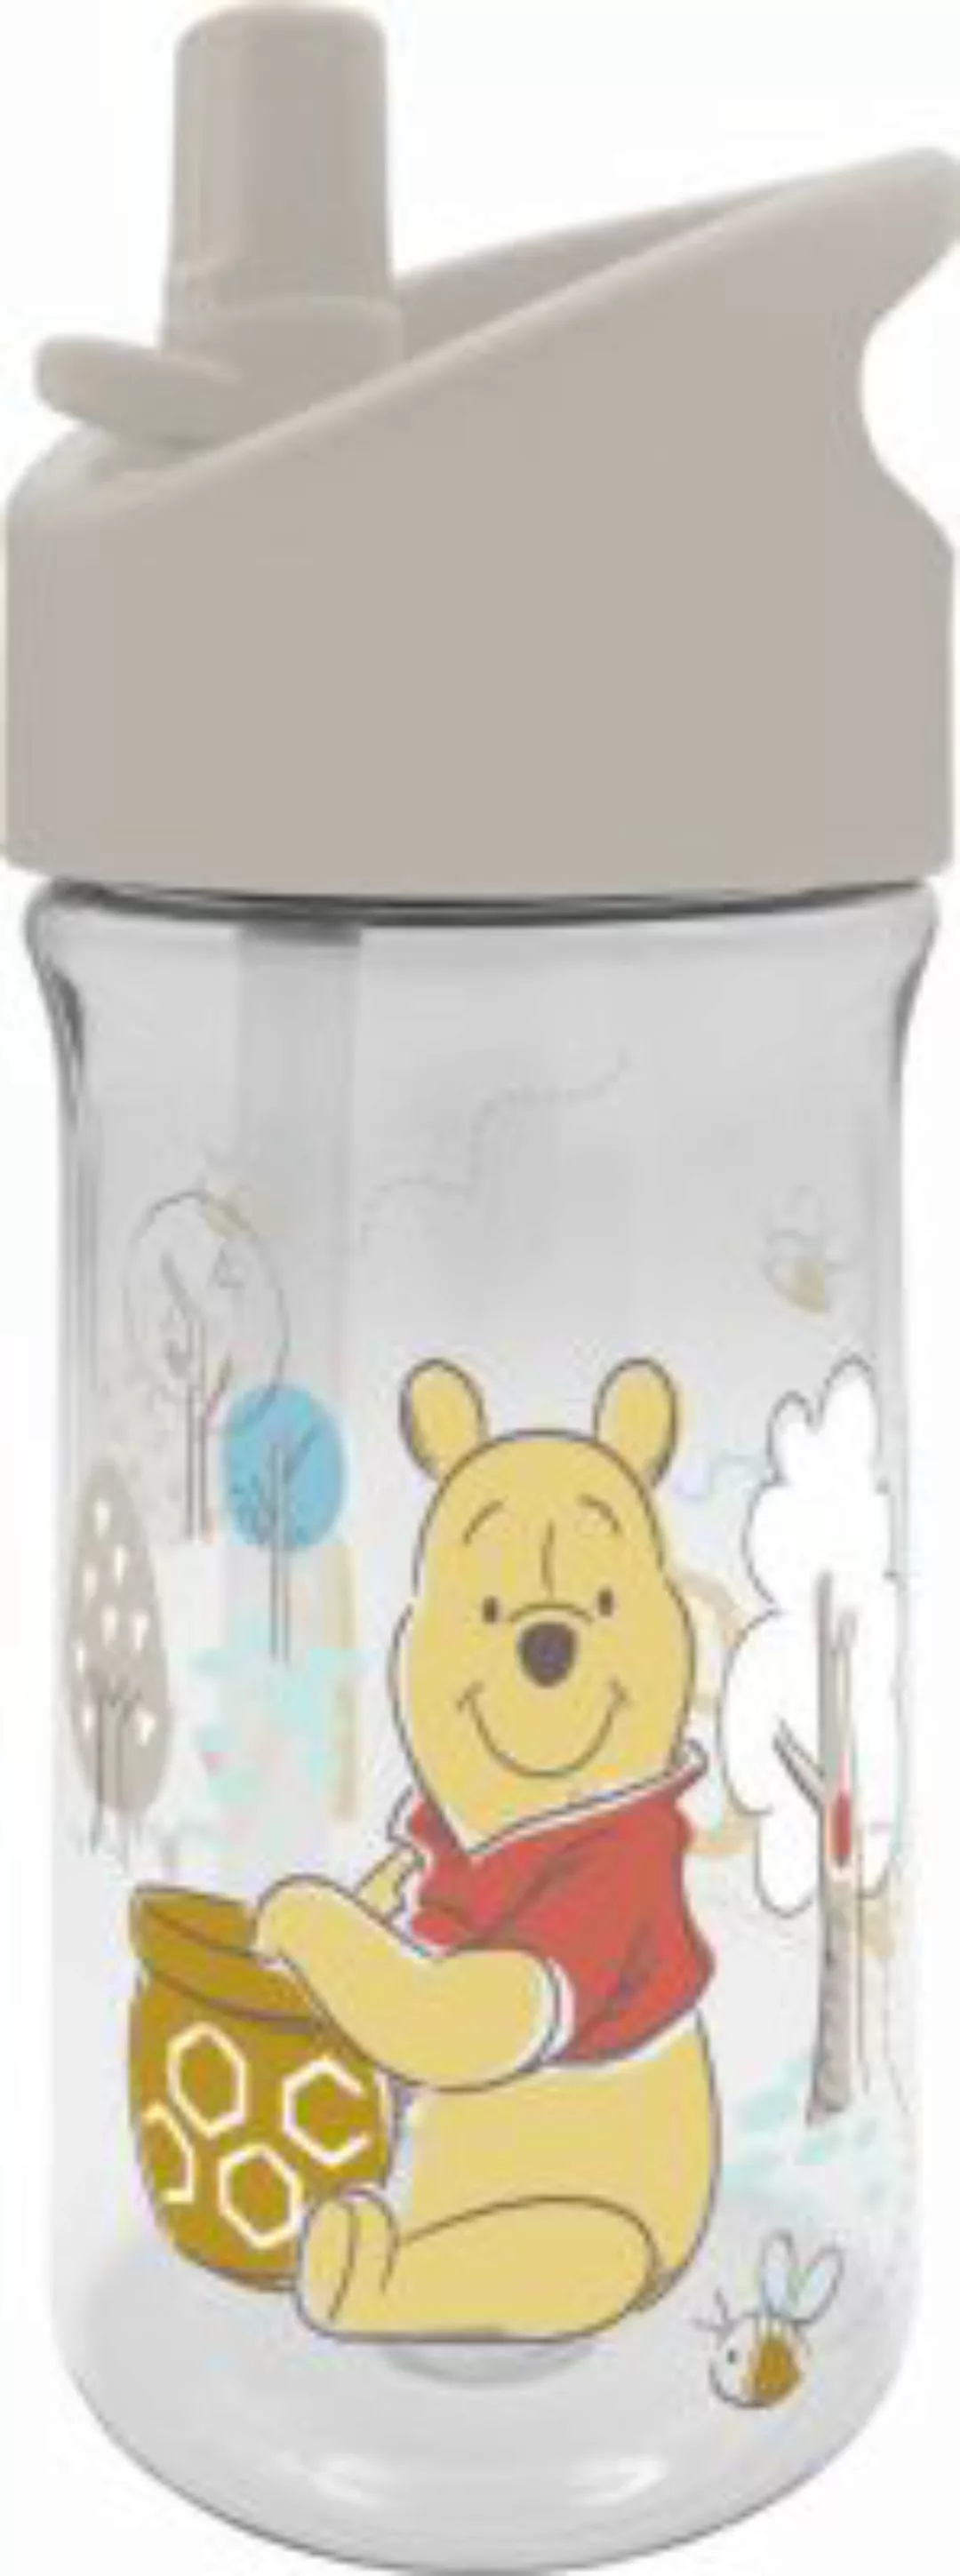 Geda Labels Trinkflasche Winnie Pooh hunny Bear 350ml Trinkflaschen bunt günstig online kaufen